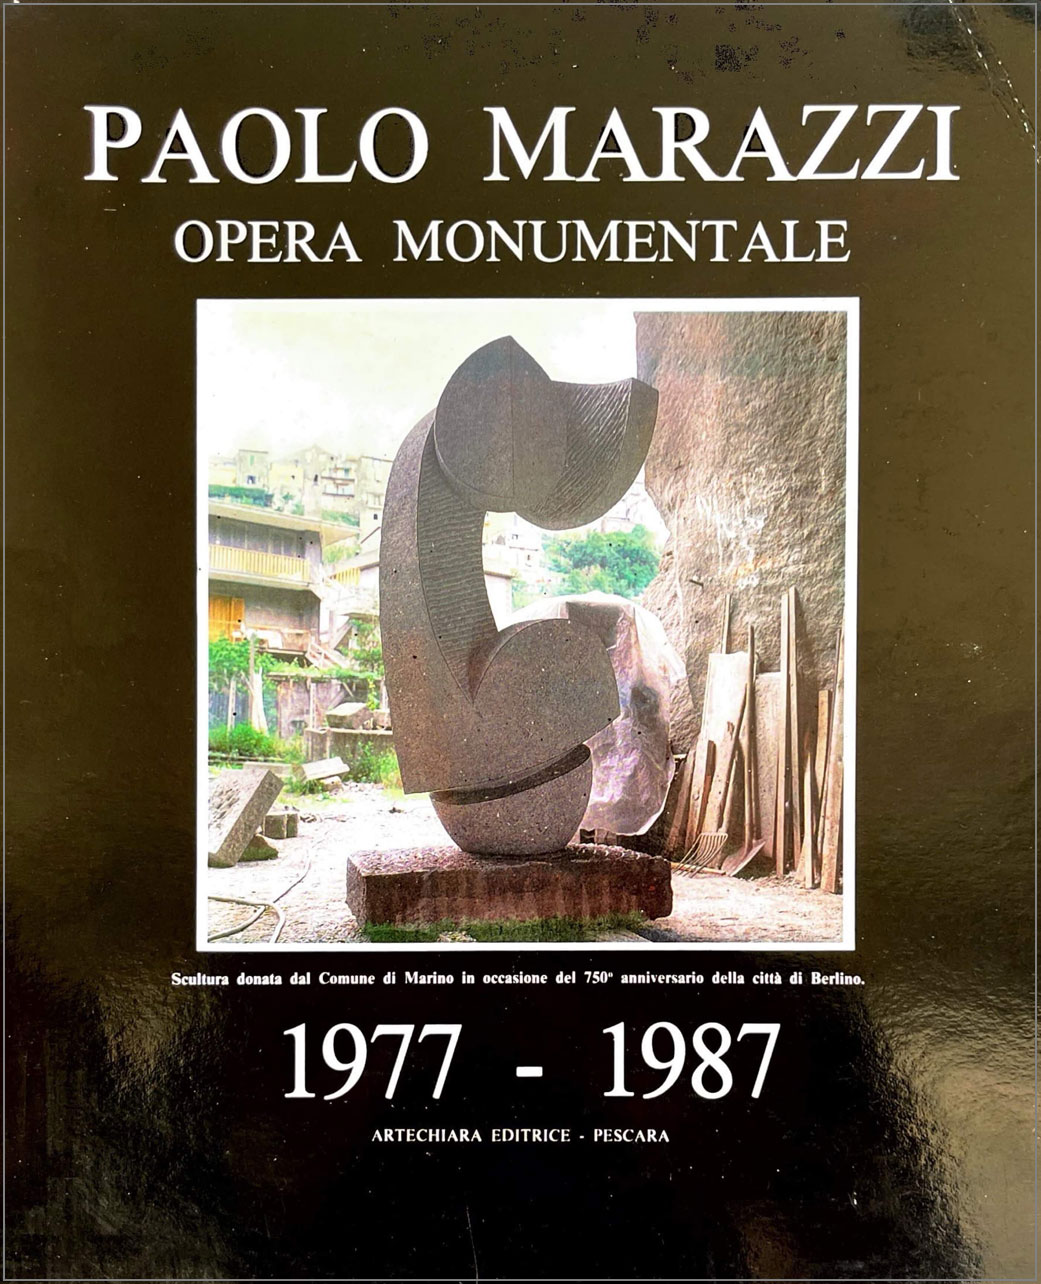 Opera monumentale 1977 - 1987 (i segnali ciclici e antropomorfici di Paolo Marazzi)